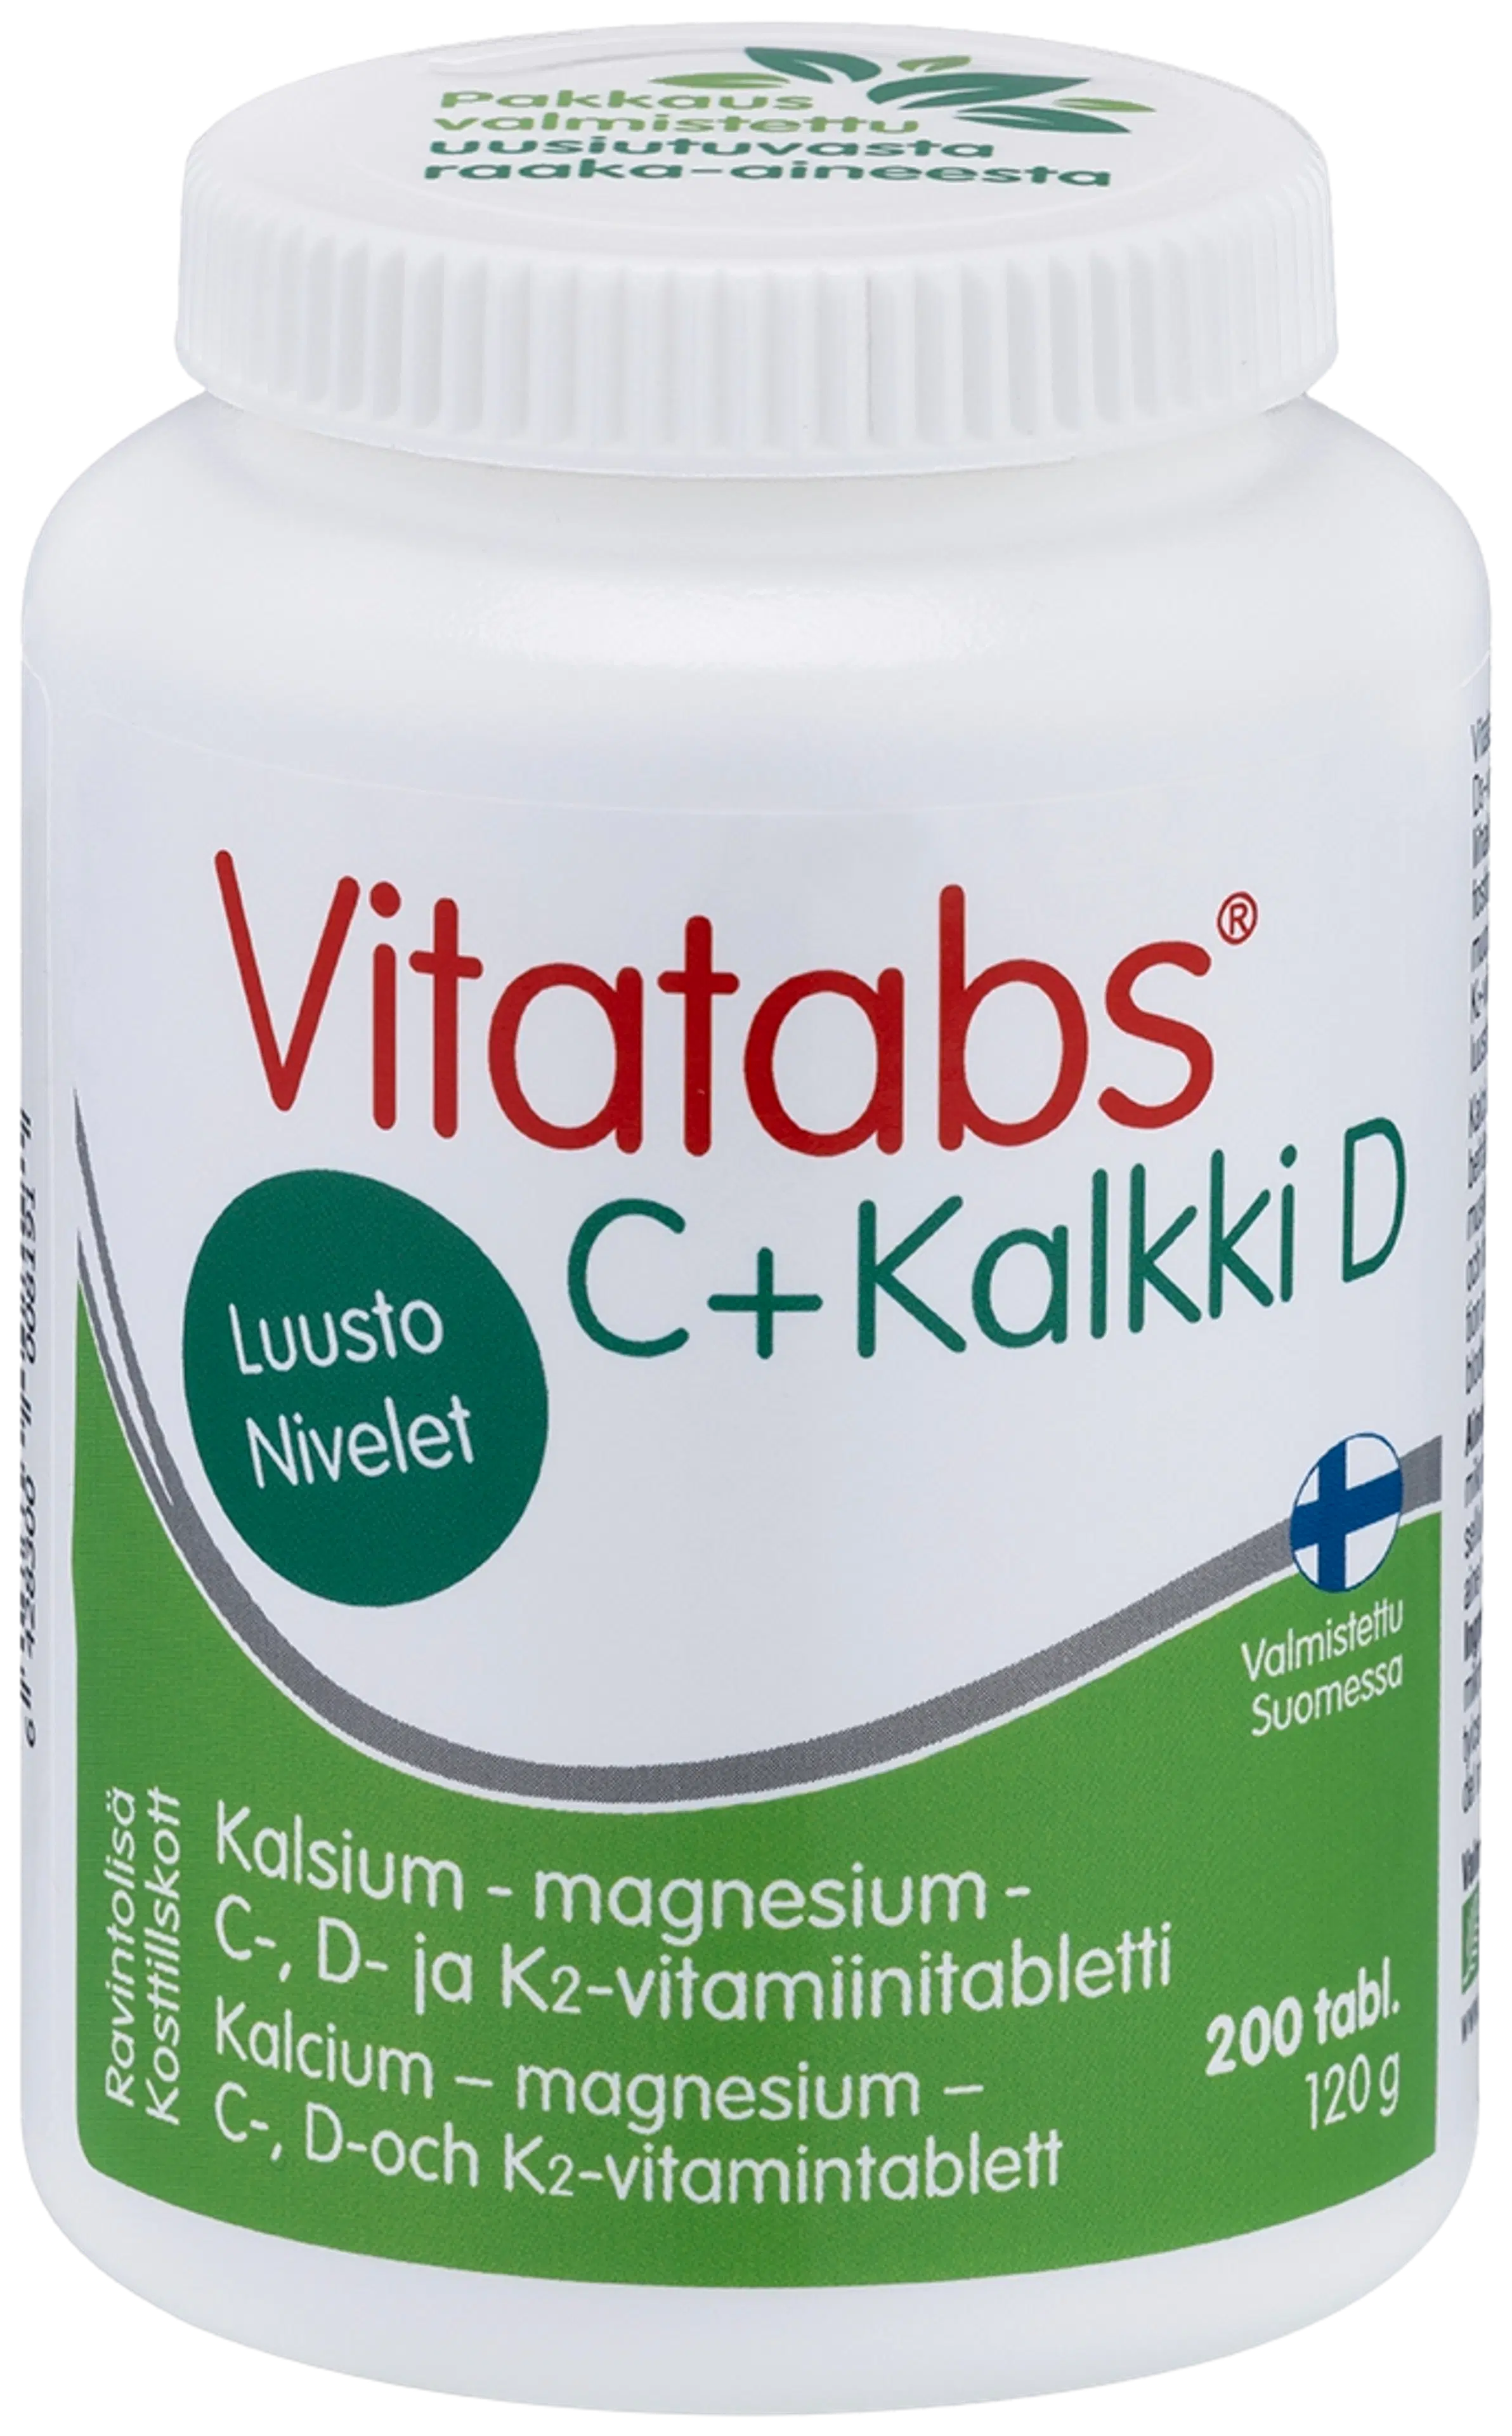 Vitatabs C + Kalkki D kalsium-magnesium-C-, D- ja K2-vitamiinitabletti 200 tabl